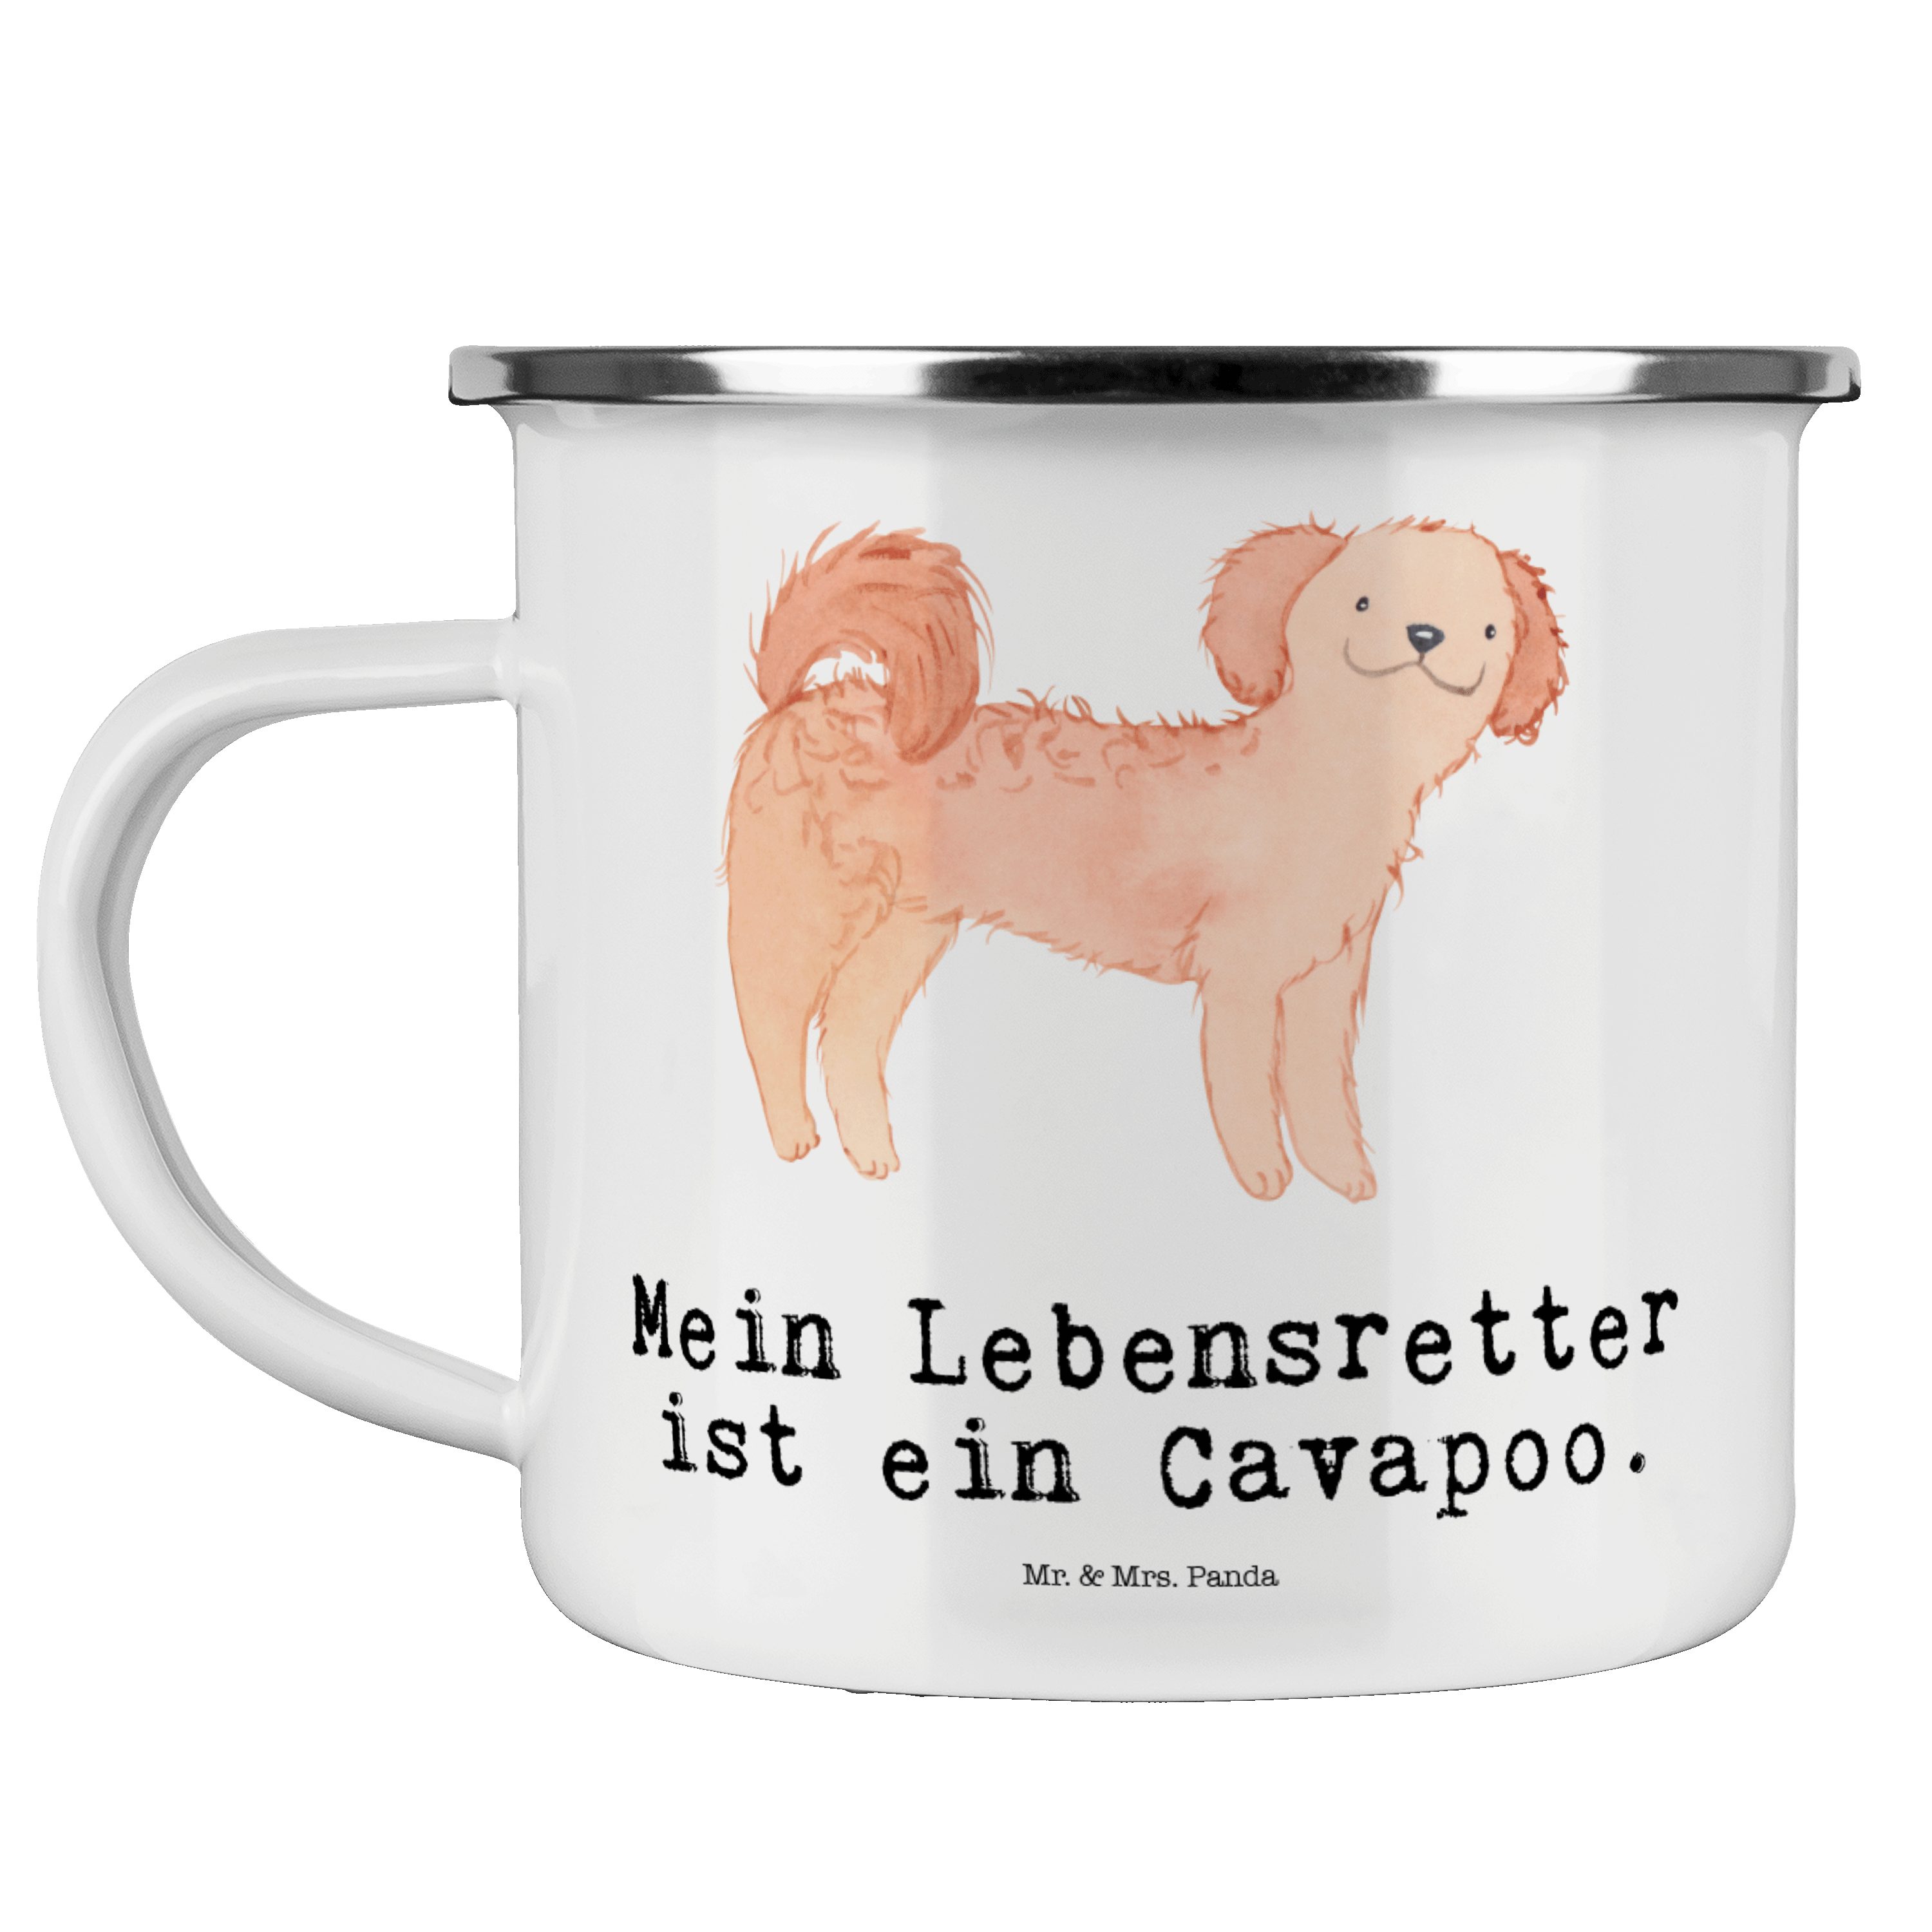 Mr. & Mrs. Panda Becher Cavapoo Lebensretter - Weiß - Geschenk, Cavoodle, Emaille Campingbech, Emaille | Becher